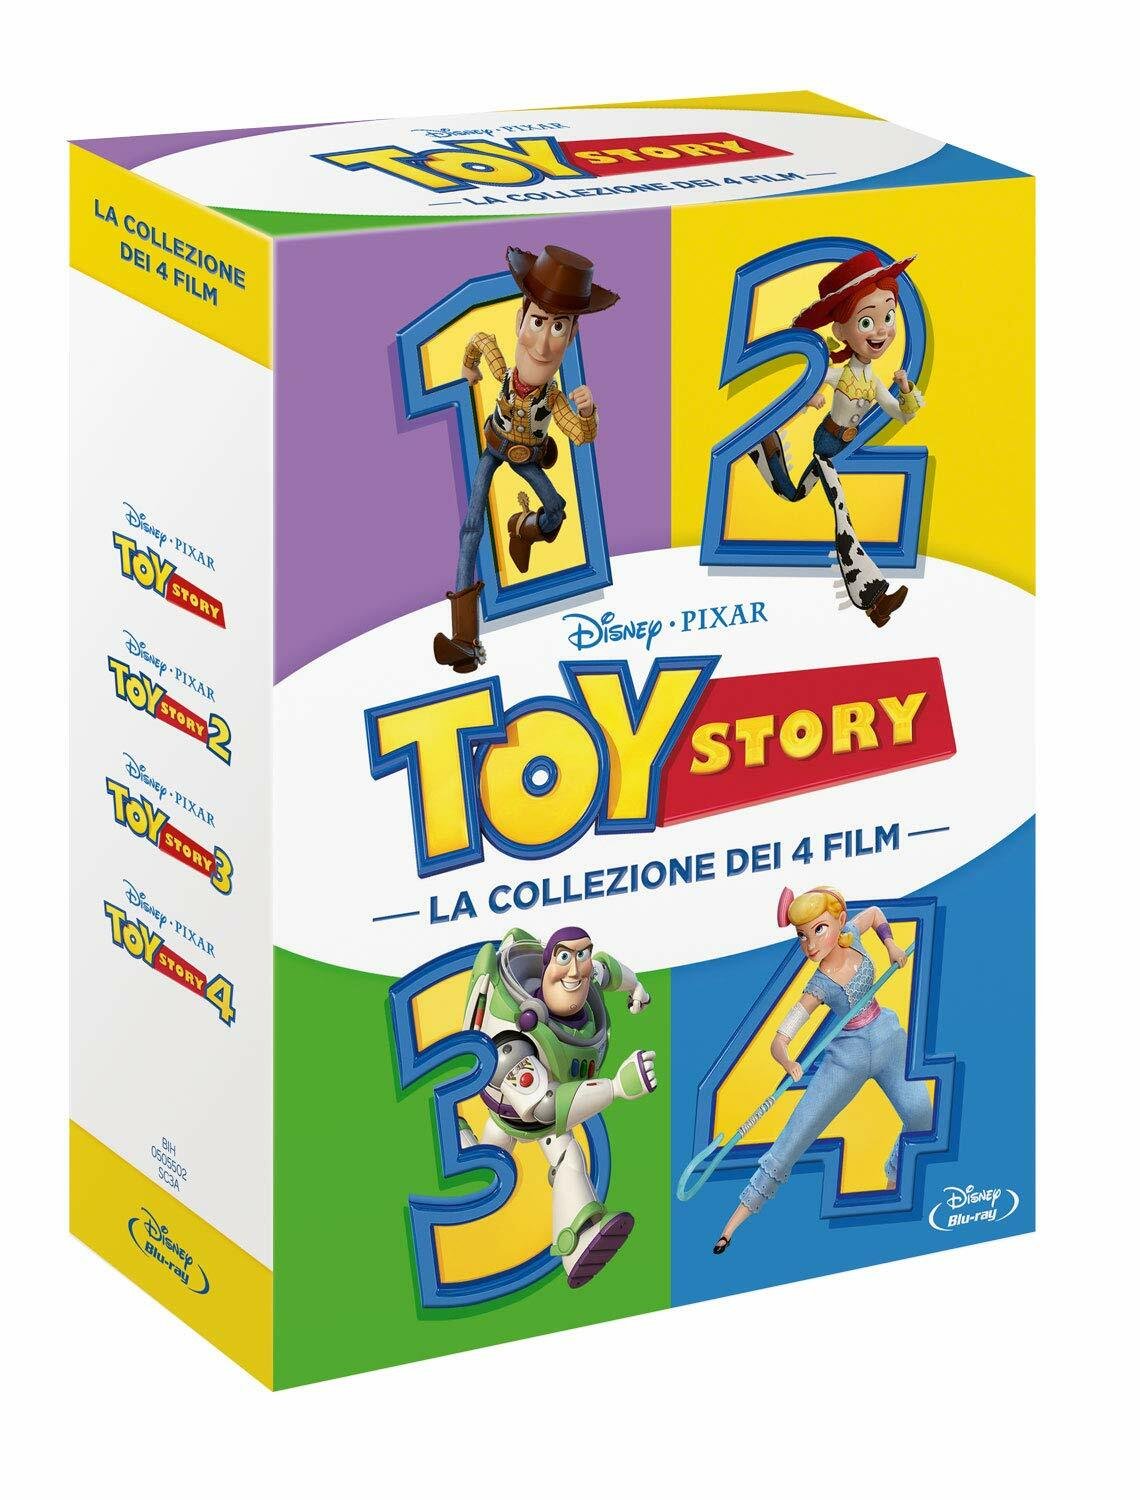 Il box set con la saga di Toy Story